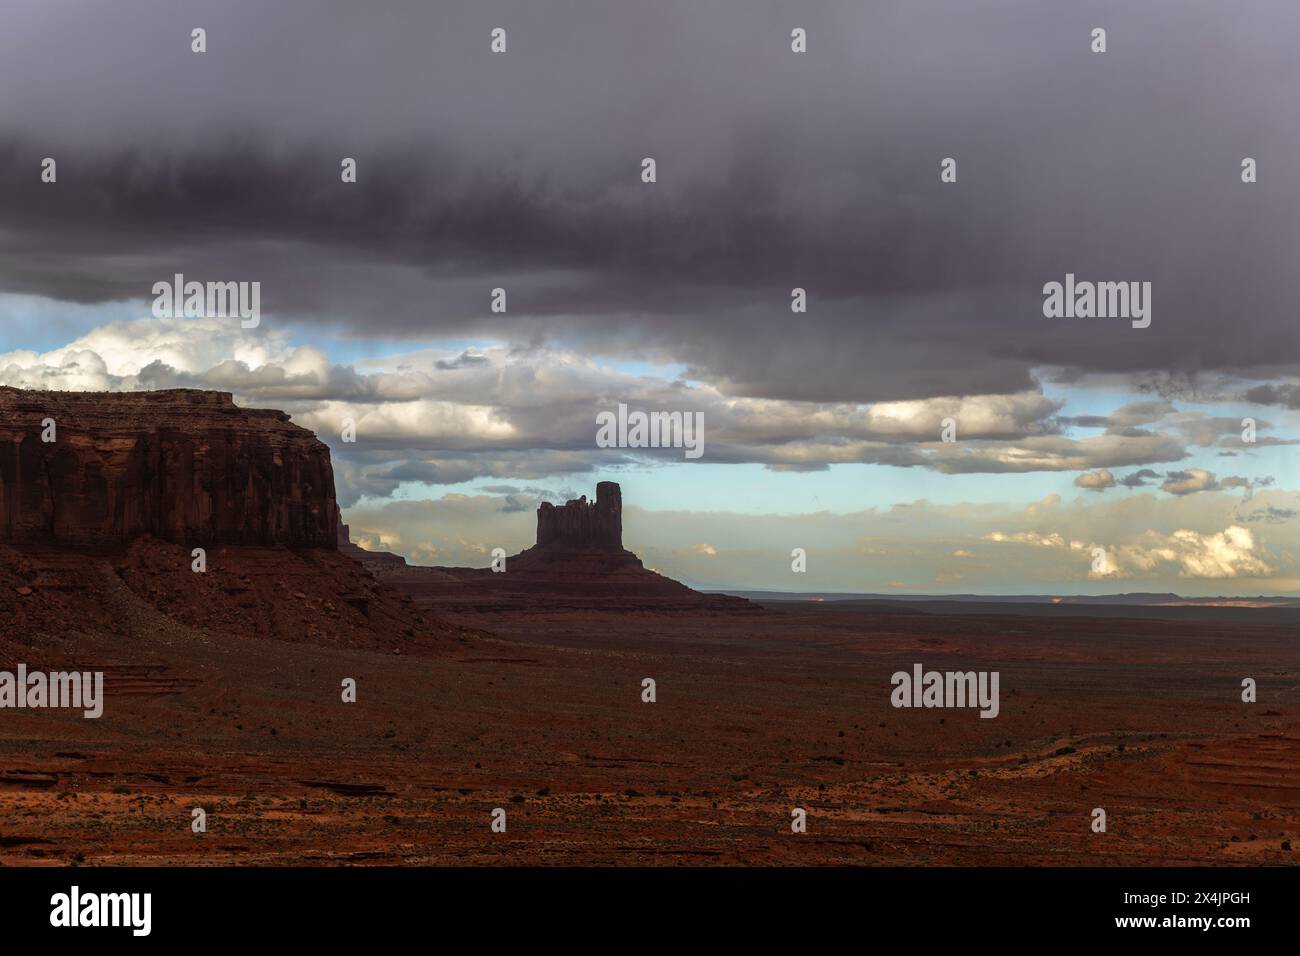 La tempesta della Monument Valley scorre attraverso, creando un'atmosfera buia e inquietante nell'aspra e remota natura selvaggia Foto Stock